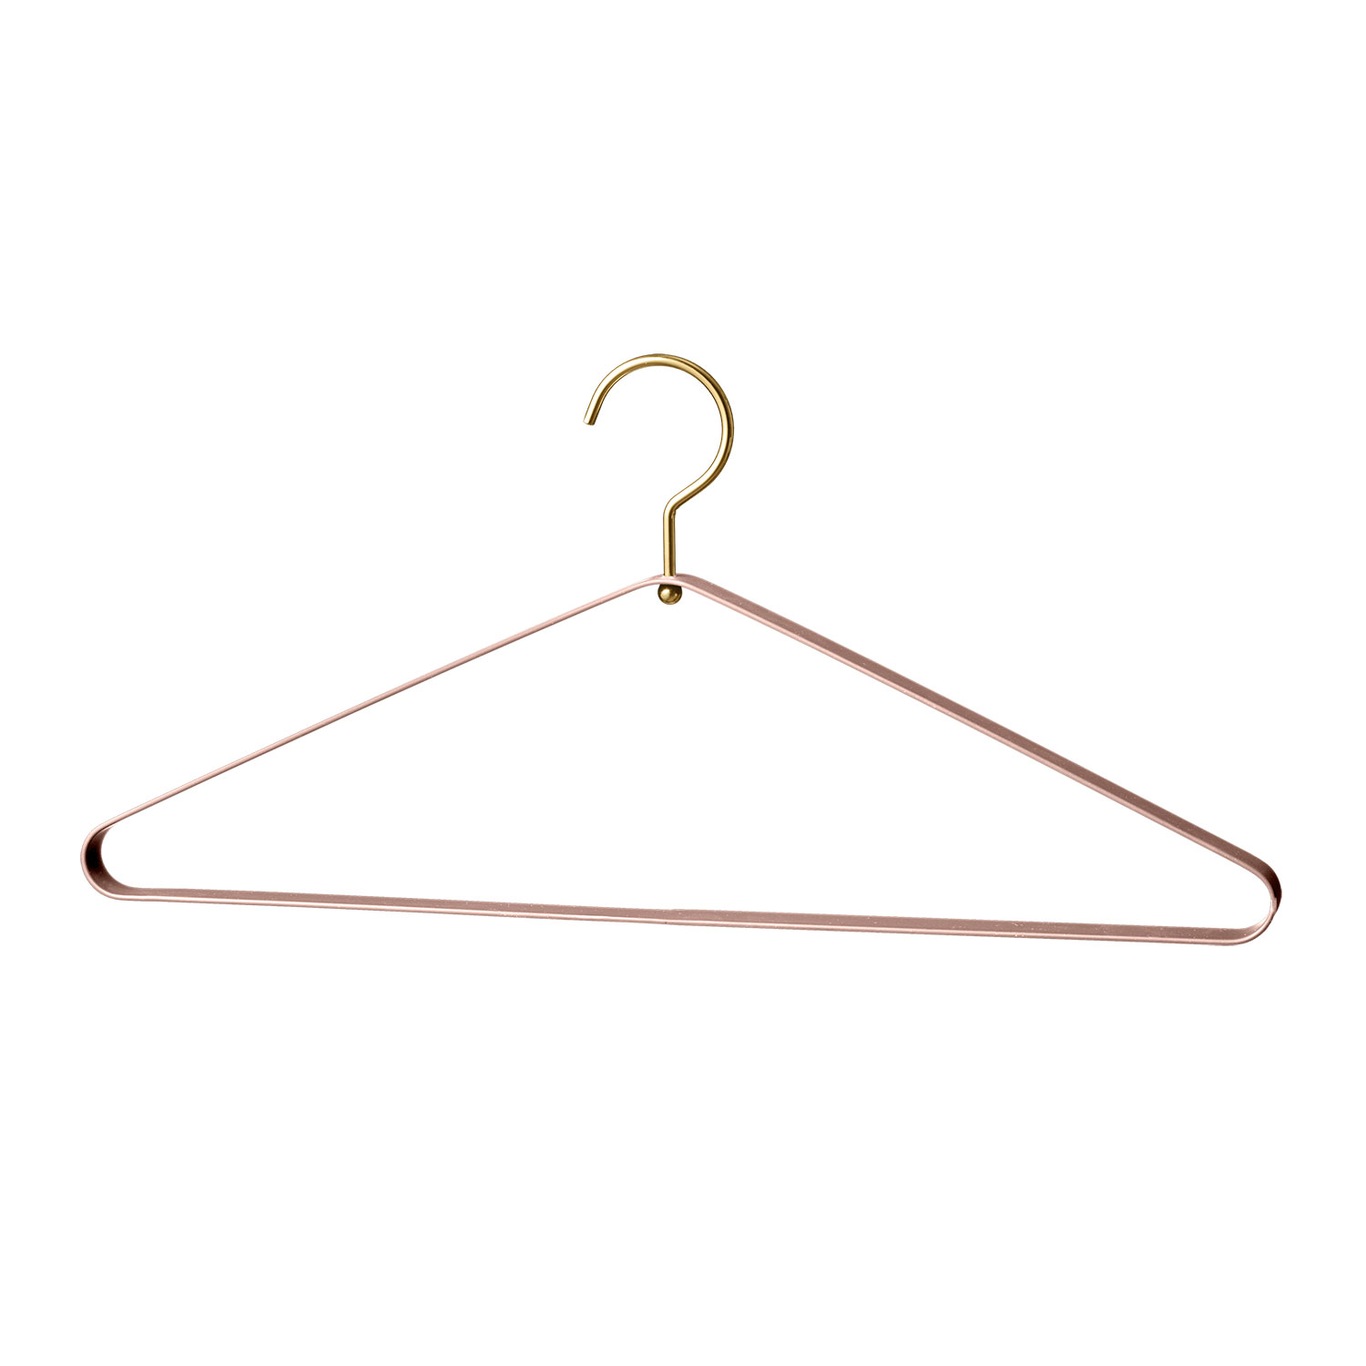 Vestis Clothes Hanger Set of 2, Rose/Gold